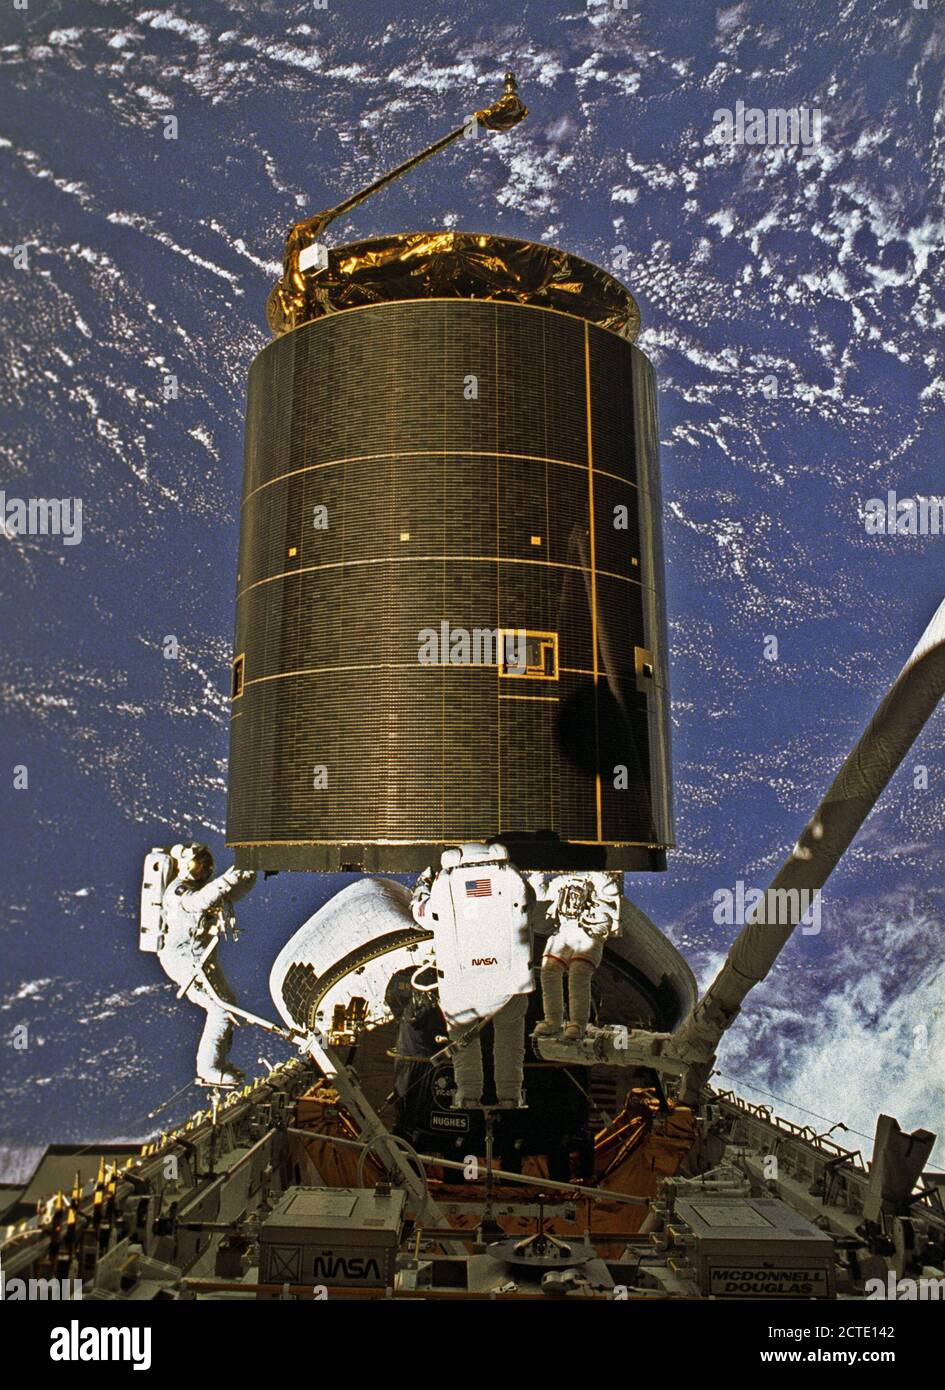 STS-49, der erste Flug des Space Shuttle Orbiter Endeavour, hob vom Launch Pad 39B am Mai 7, 1992 um 6:40:00 Uhr CDT. Der STS-49 Mission war die erste US-orbitalen Flug nach Funktion 4 Extra vehicular Aktivitäten (EVAs), und der erste Flug nach 3 Crew Mitglieder arbeiten gleichzeitig außerhalb des Raumfahrzeugs. Das primäre Ziel war die Erfassung und Umschichtung der INTELSAT VI (F-3), eine Mitteilung Satelliten für die International Telecommunication Satellite Organisation, die in einem unbrauchbaren Orbit seit seinem Start an Bord der Titan Rakete im März 1990 gestrandet war. In diesem o Stockfoto